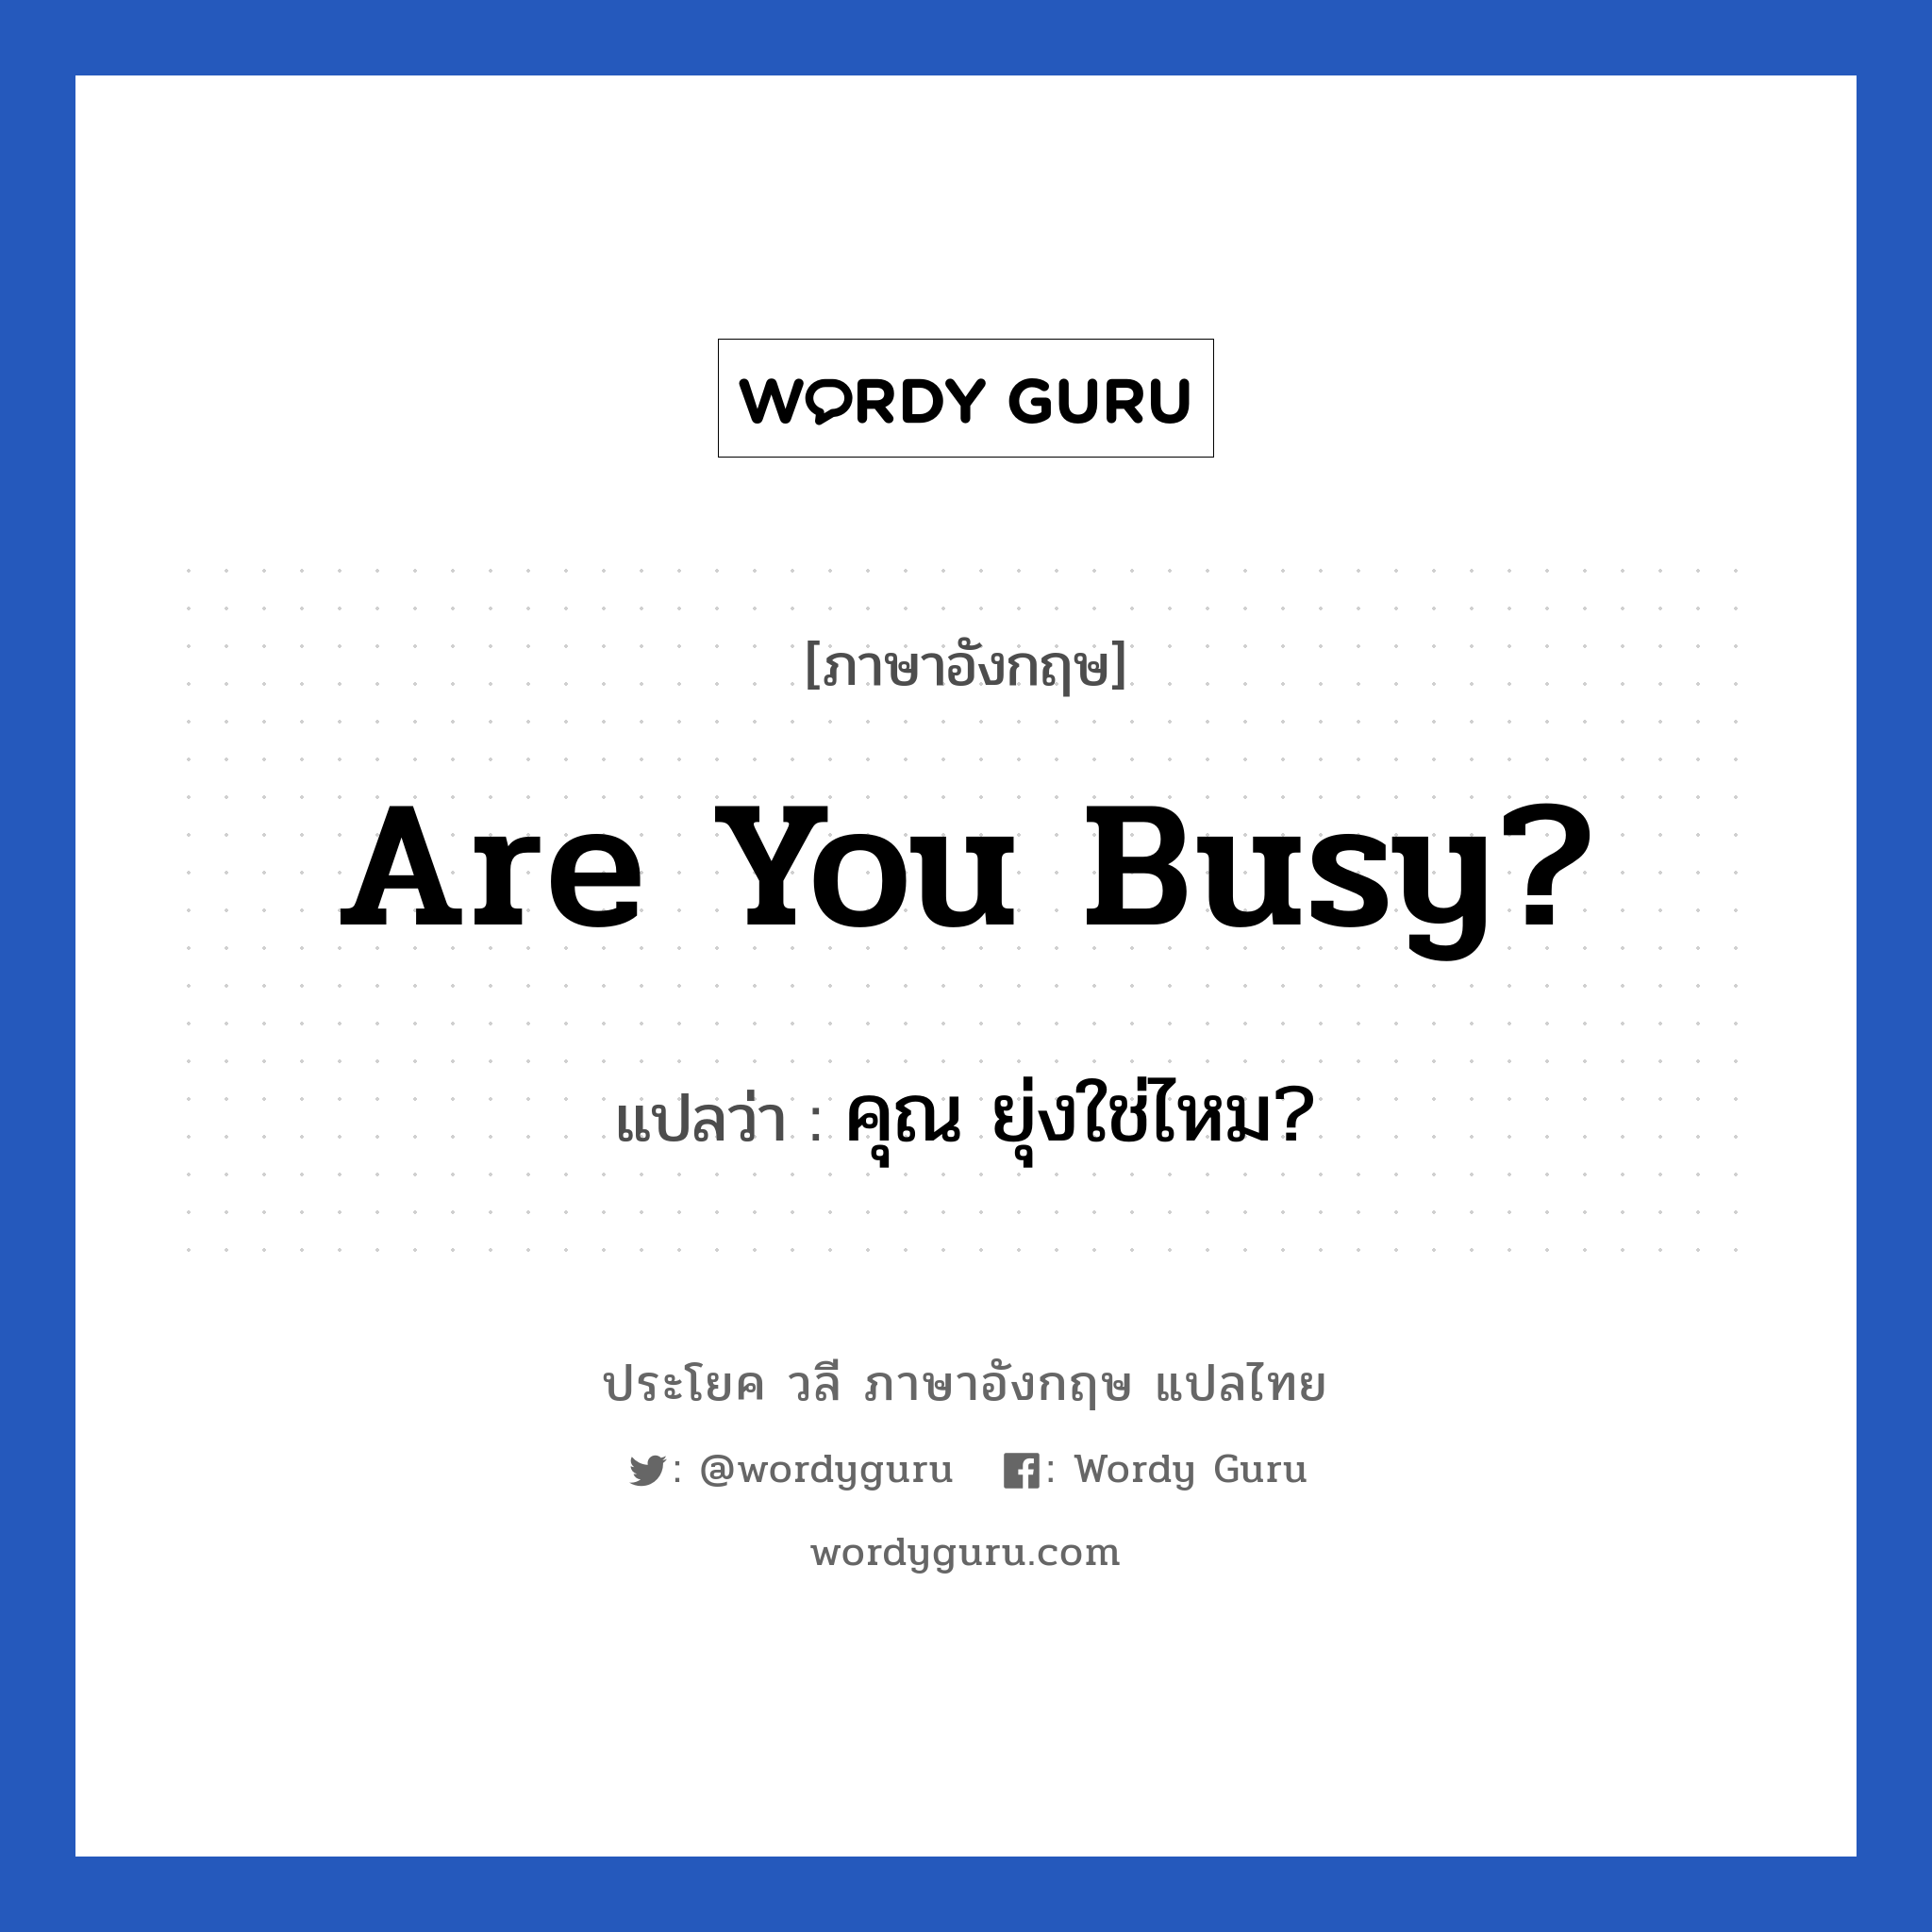 คุณ ยุ่งใช่ไหม? ภาษาอังกฤษ?, วลีภาษาอังกฤษ คุณ ยุ่งใช่ไหม? แปลว่า Are you busy?